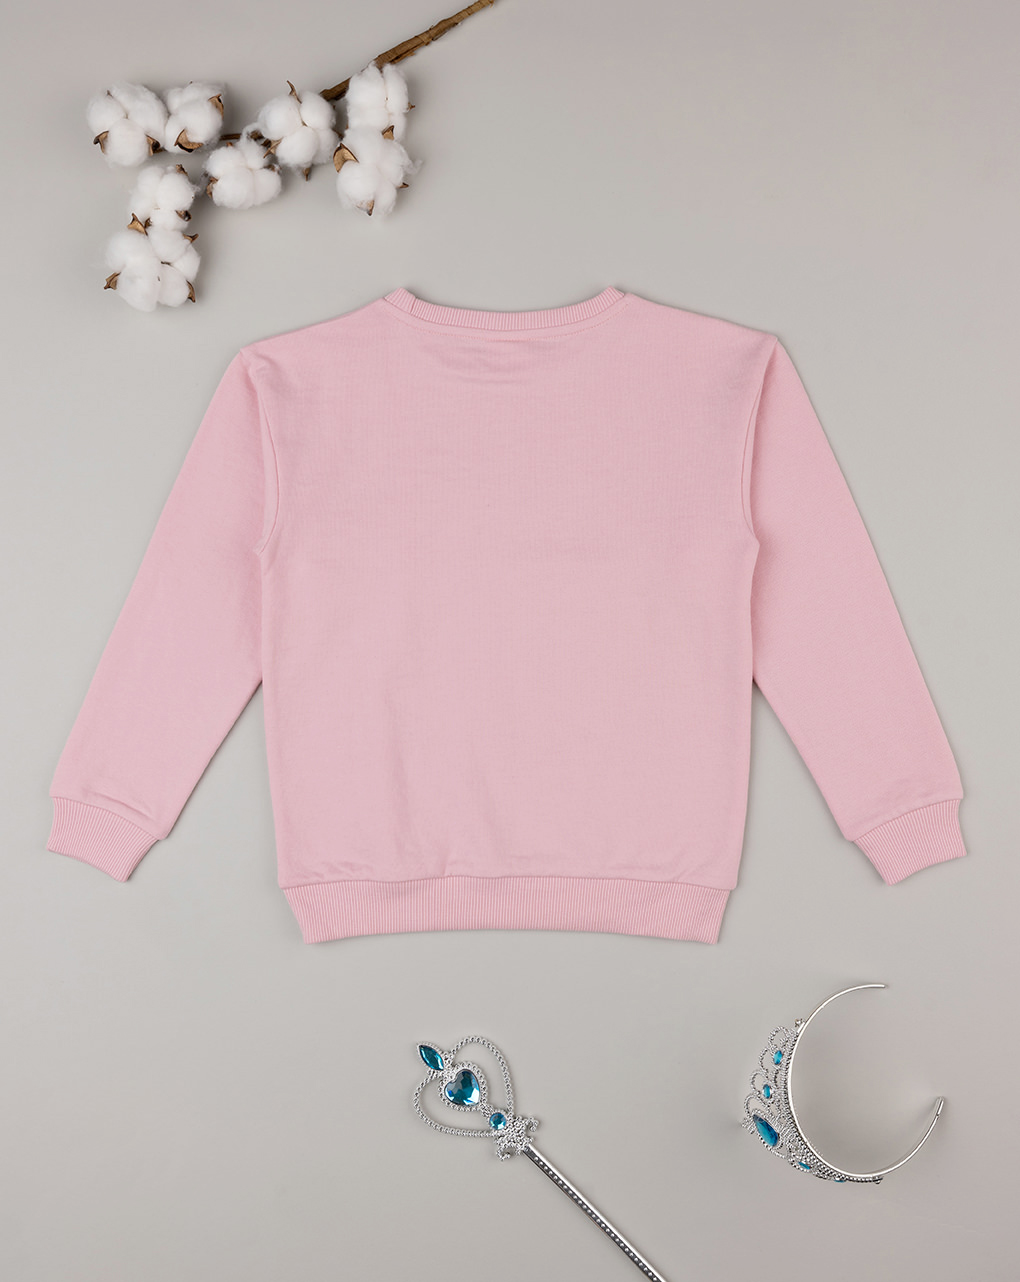 παιδική μπλούζα φούτερ ροζ με μονόκερο για κορίτσι - Prénatal